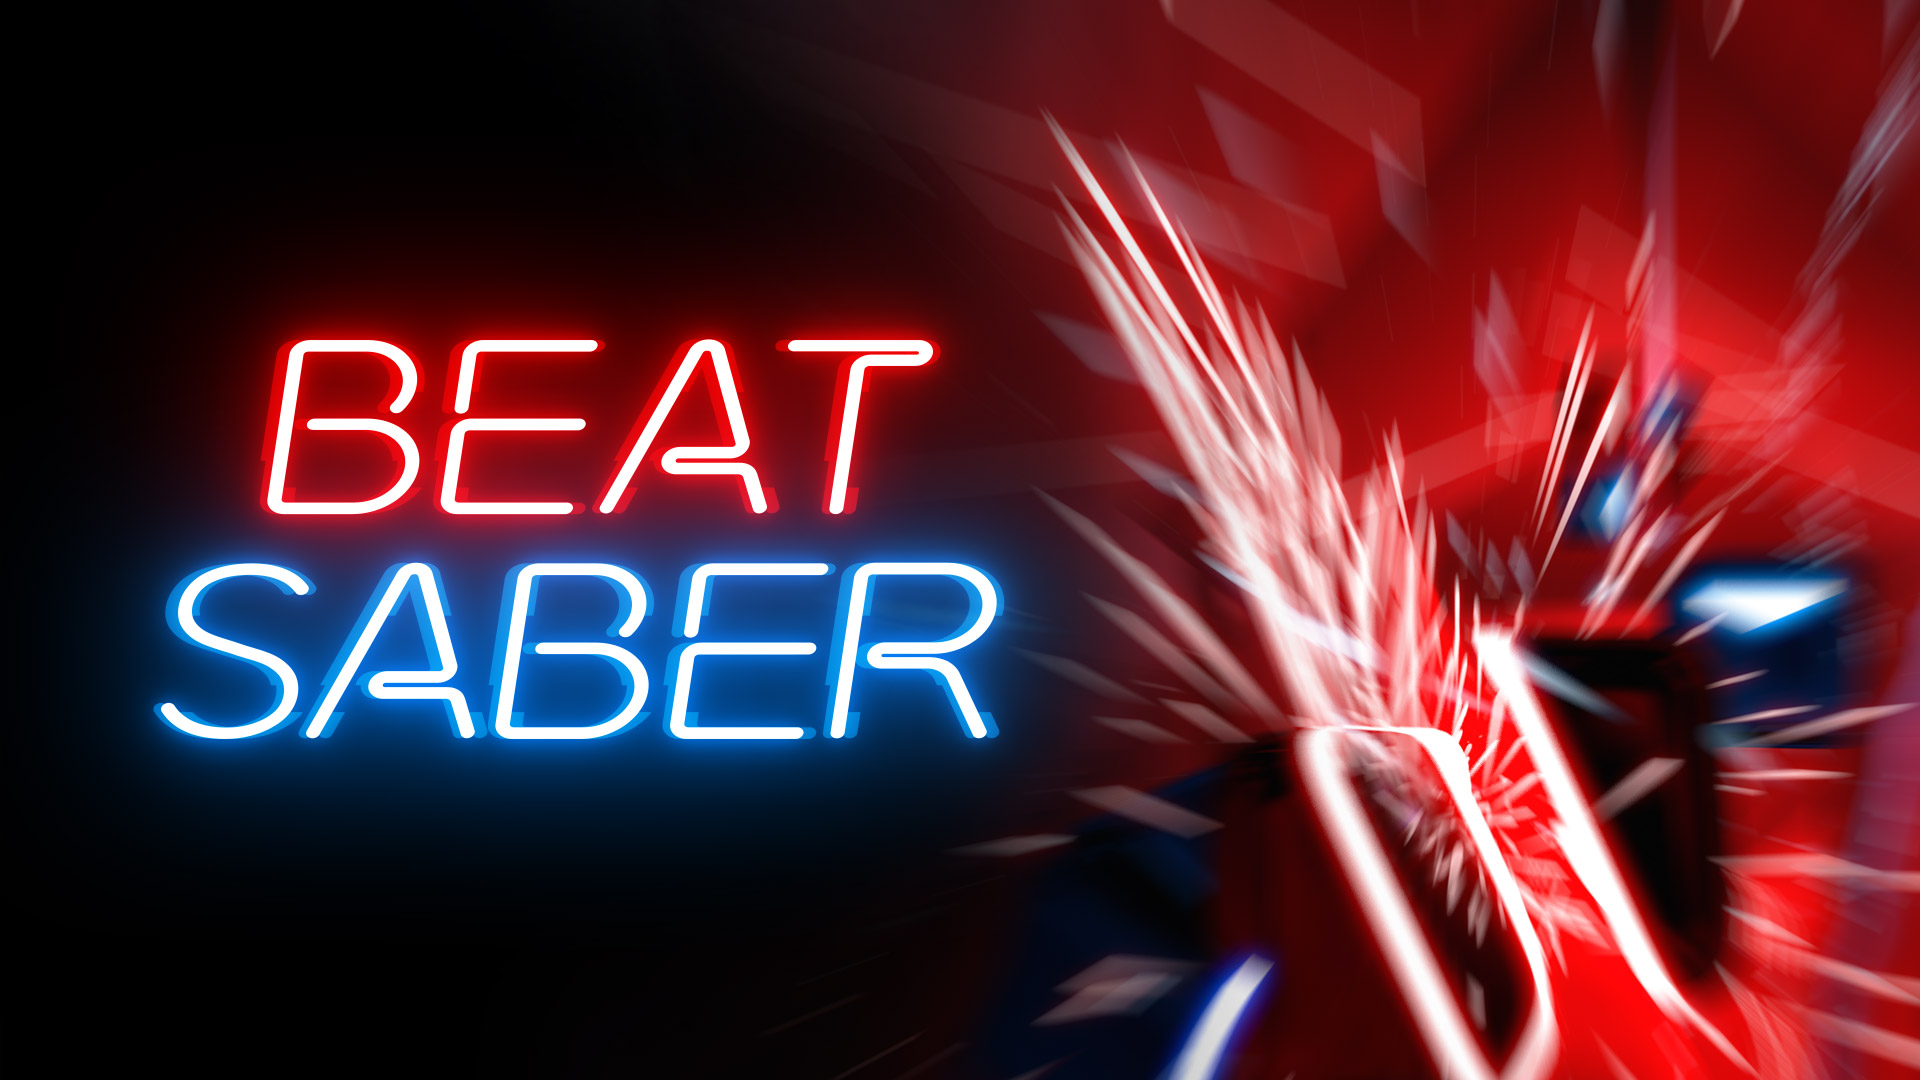 Beat Saber đã bán được 2 triệu bản và 10 triệu bài hát dưới dạng DLC